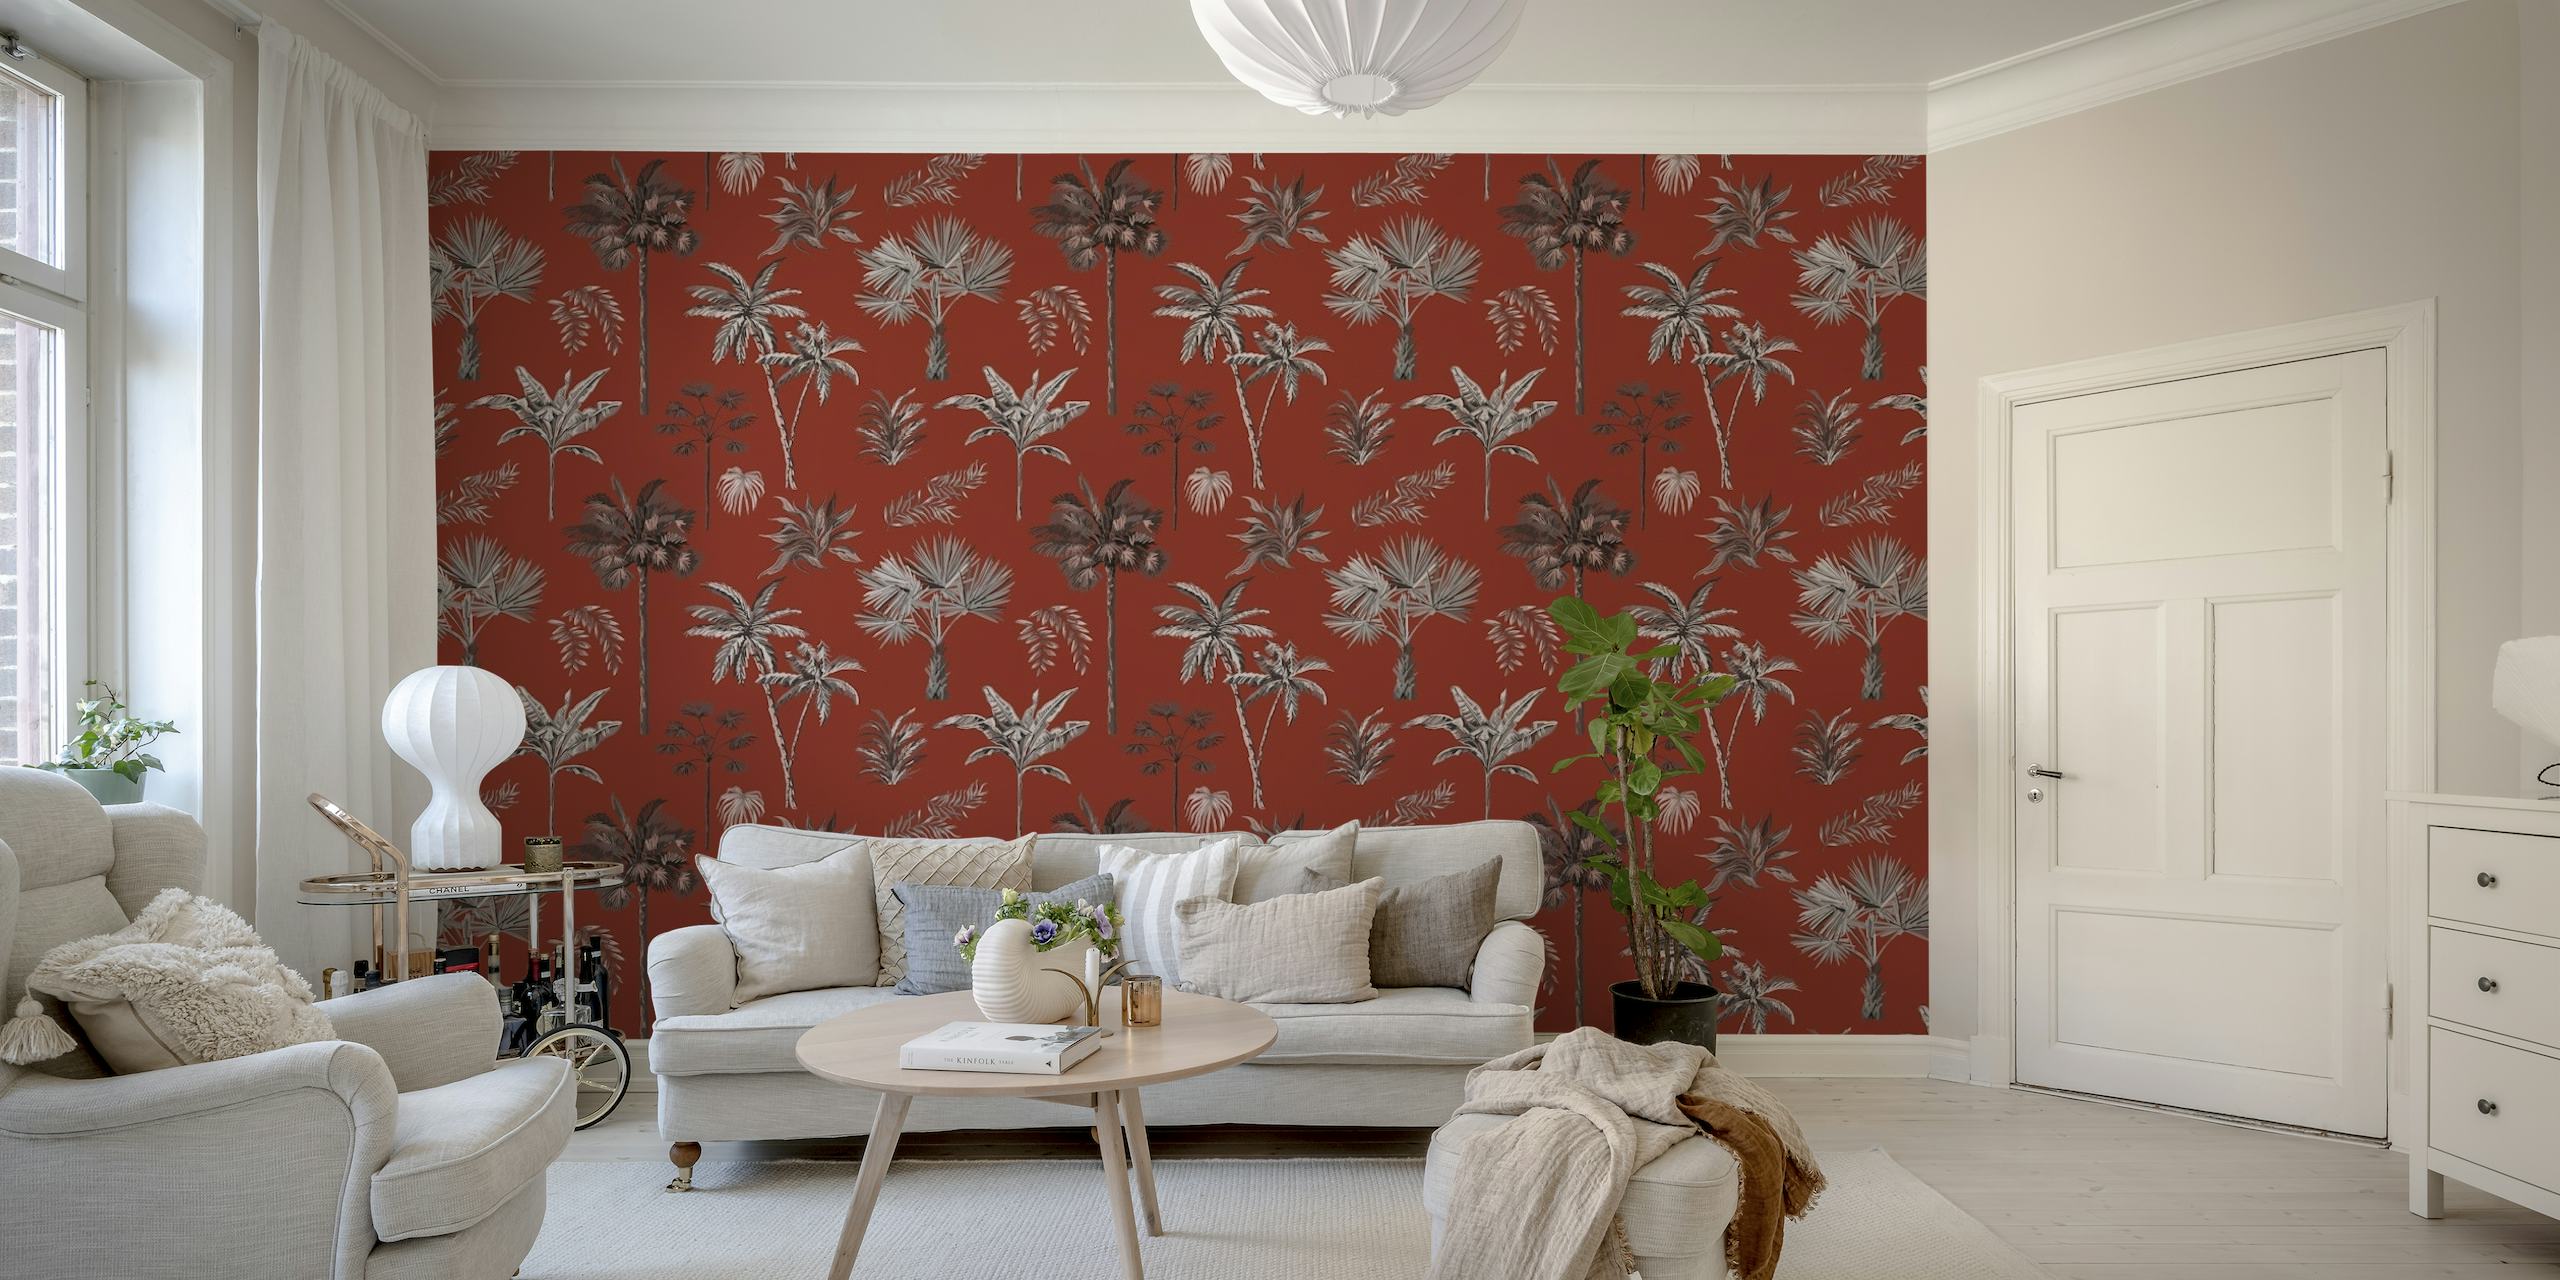 Perinteinen intialainen puukuvioinen seinämaalaus punaisella taustalla ja hopeisilla kukkakuvioilla